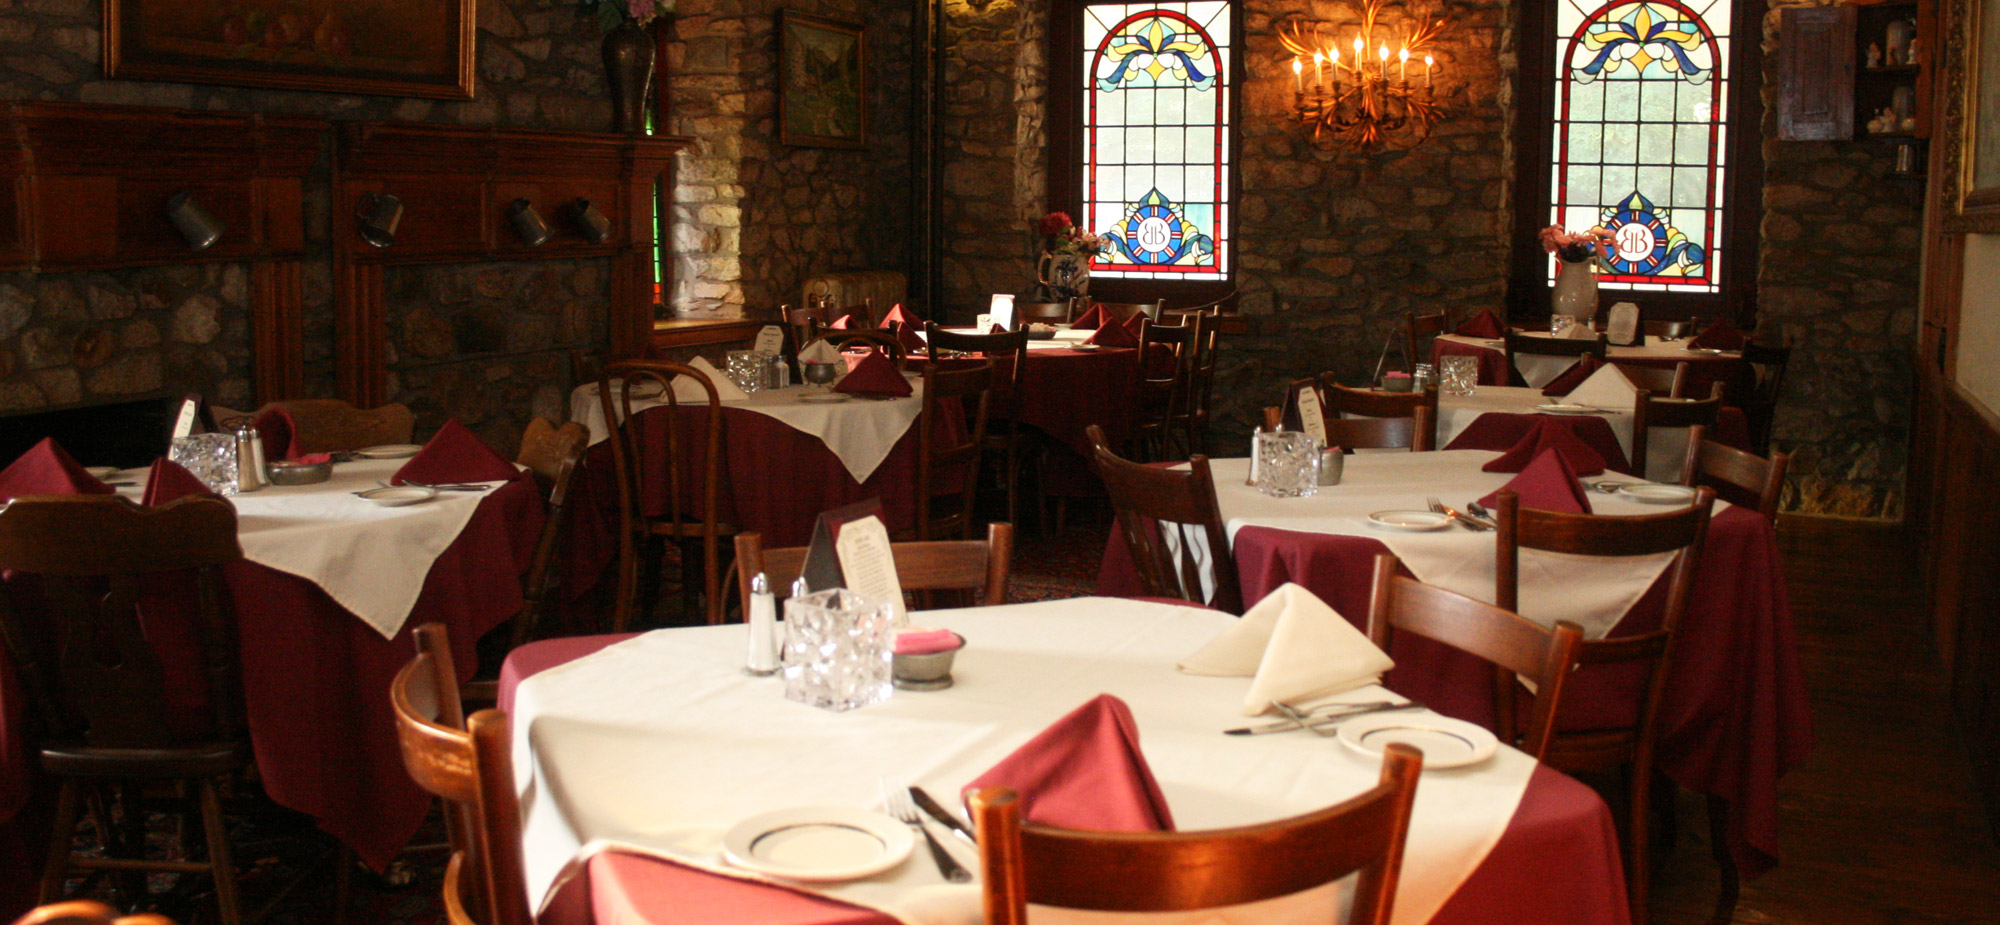 Dining room at the Springtown Inn